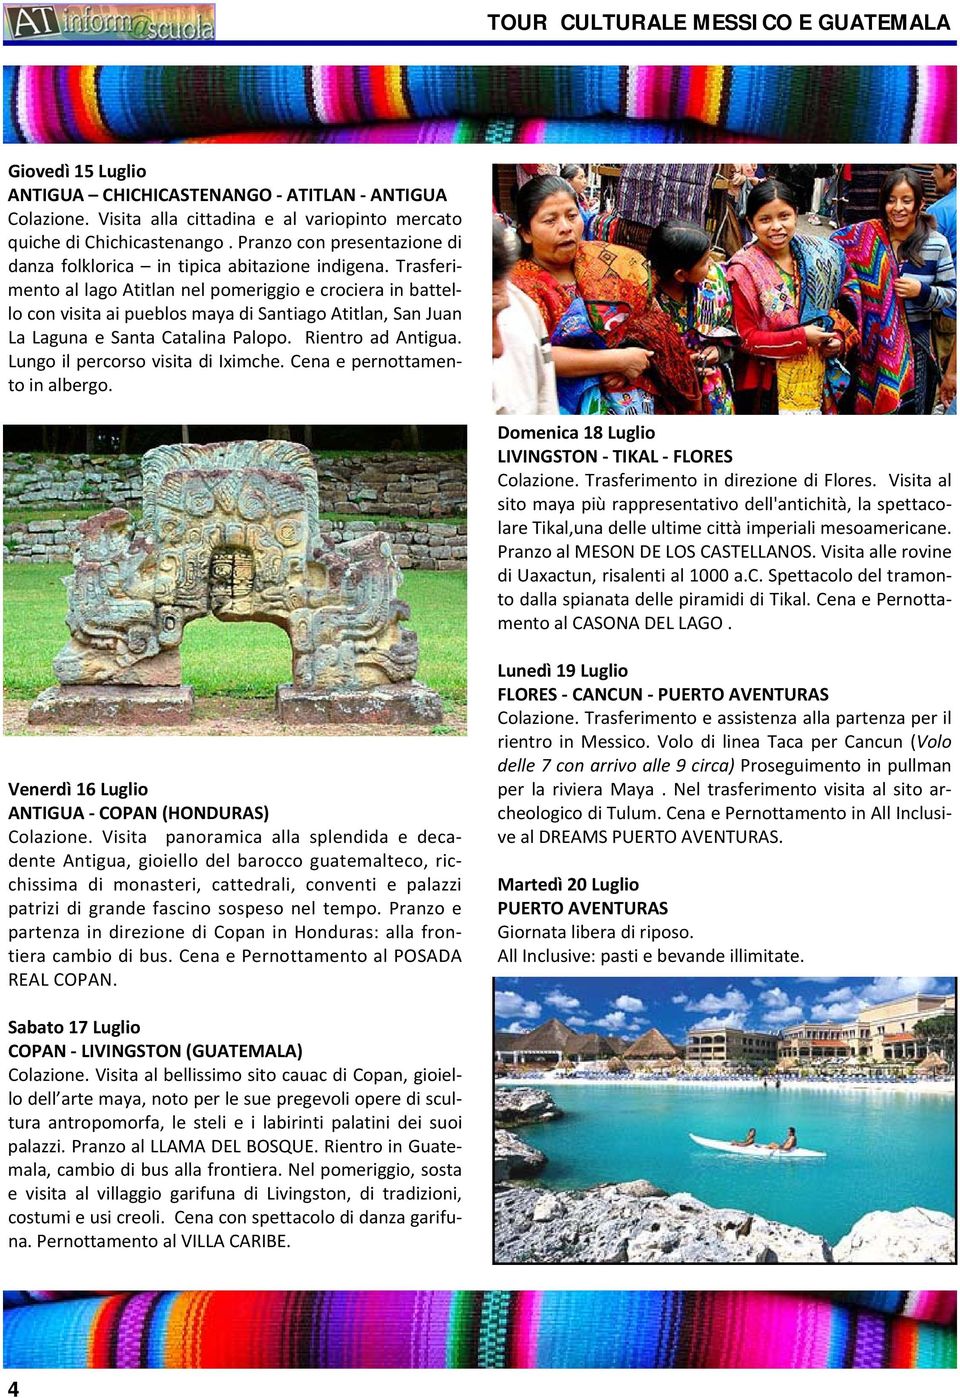 Trasferimento al lago Atitlan nel pomeriggio e crociera in battello con visita ai pueblos maya di Santiago Atitlan, San Juan La Laguna e Santa Catalina Palopo. Rientro ad Antigua.